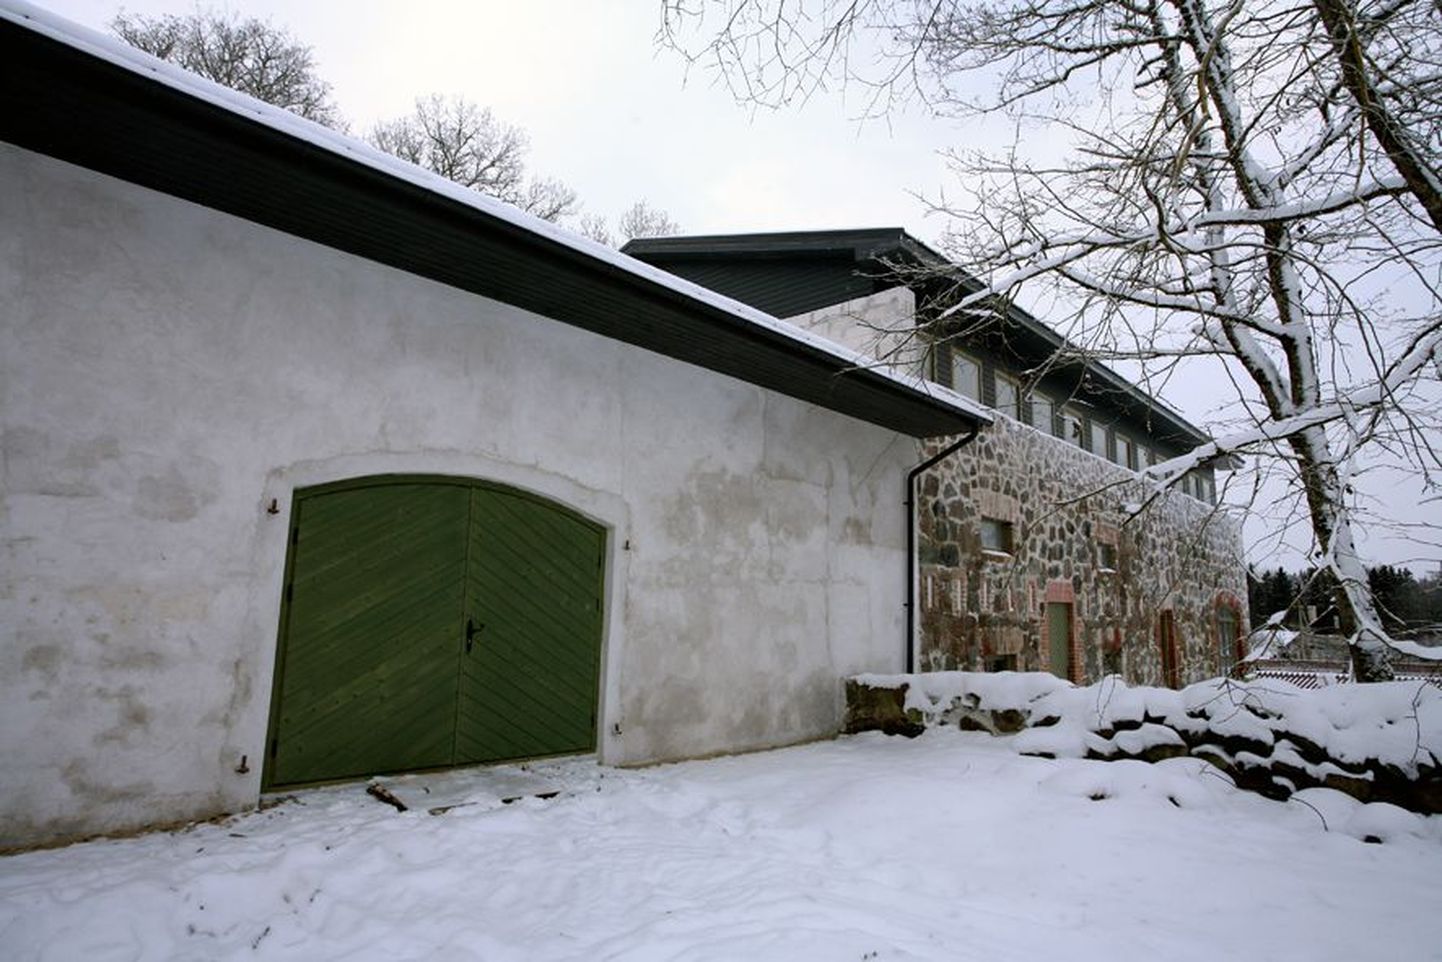 Paar aastat tagasi oli Eistvere mõisa aitkuivati sisse kukkumise äärel, aga nüüd on sellest saanud külakeskus, kus korraldada töökoosolekuid ja pidusid, mille juurde kuulub kuum saun.